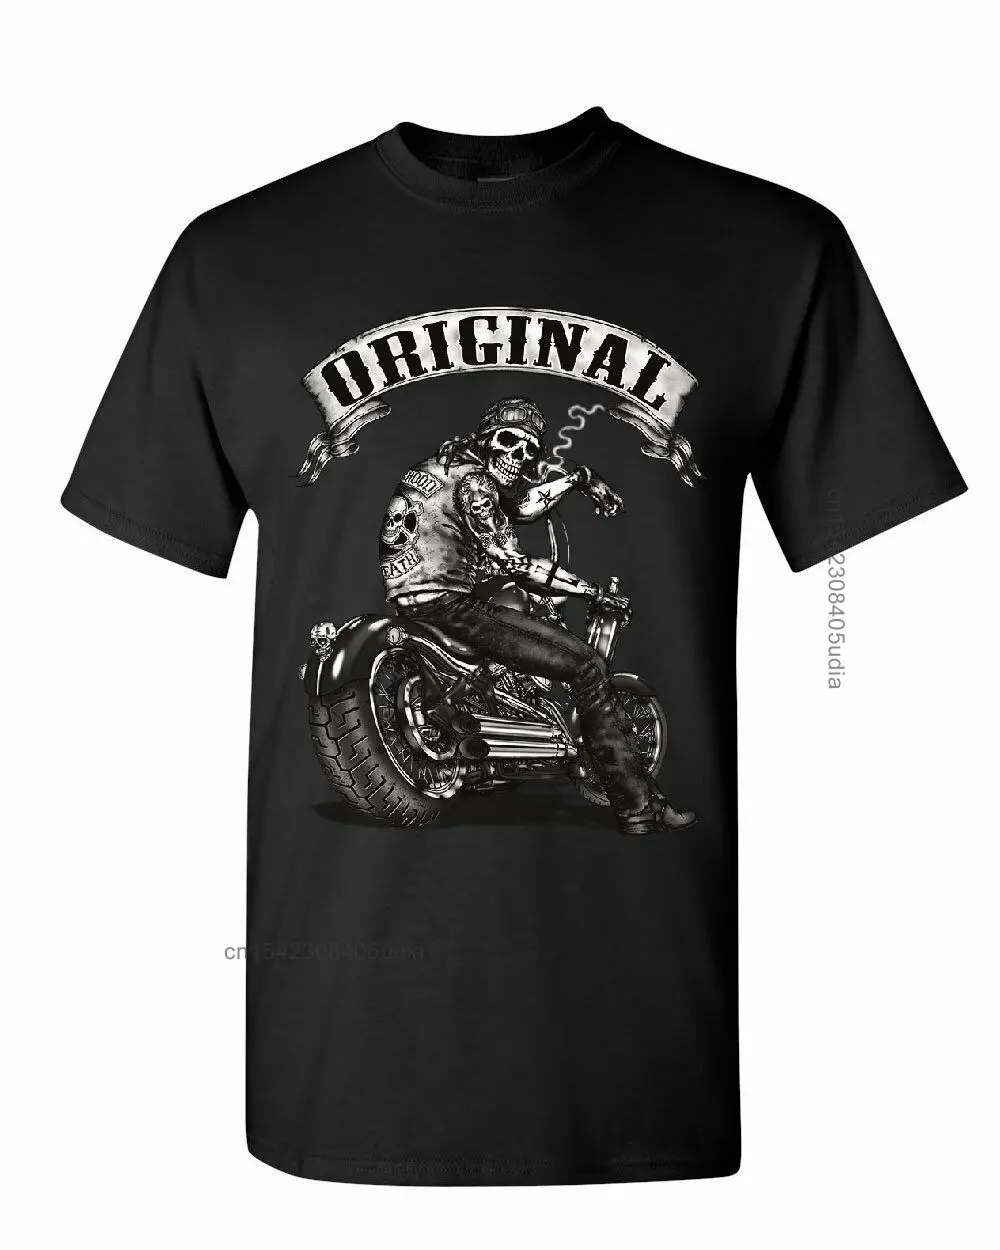 

Мужская мотоциклетная рубашка, оригинальная рубашка с принтом, развлекательная, для путешествий, с большим размером, с модной